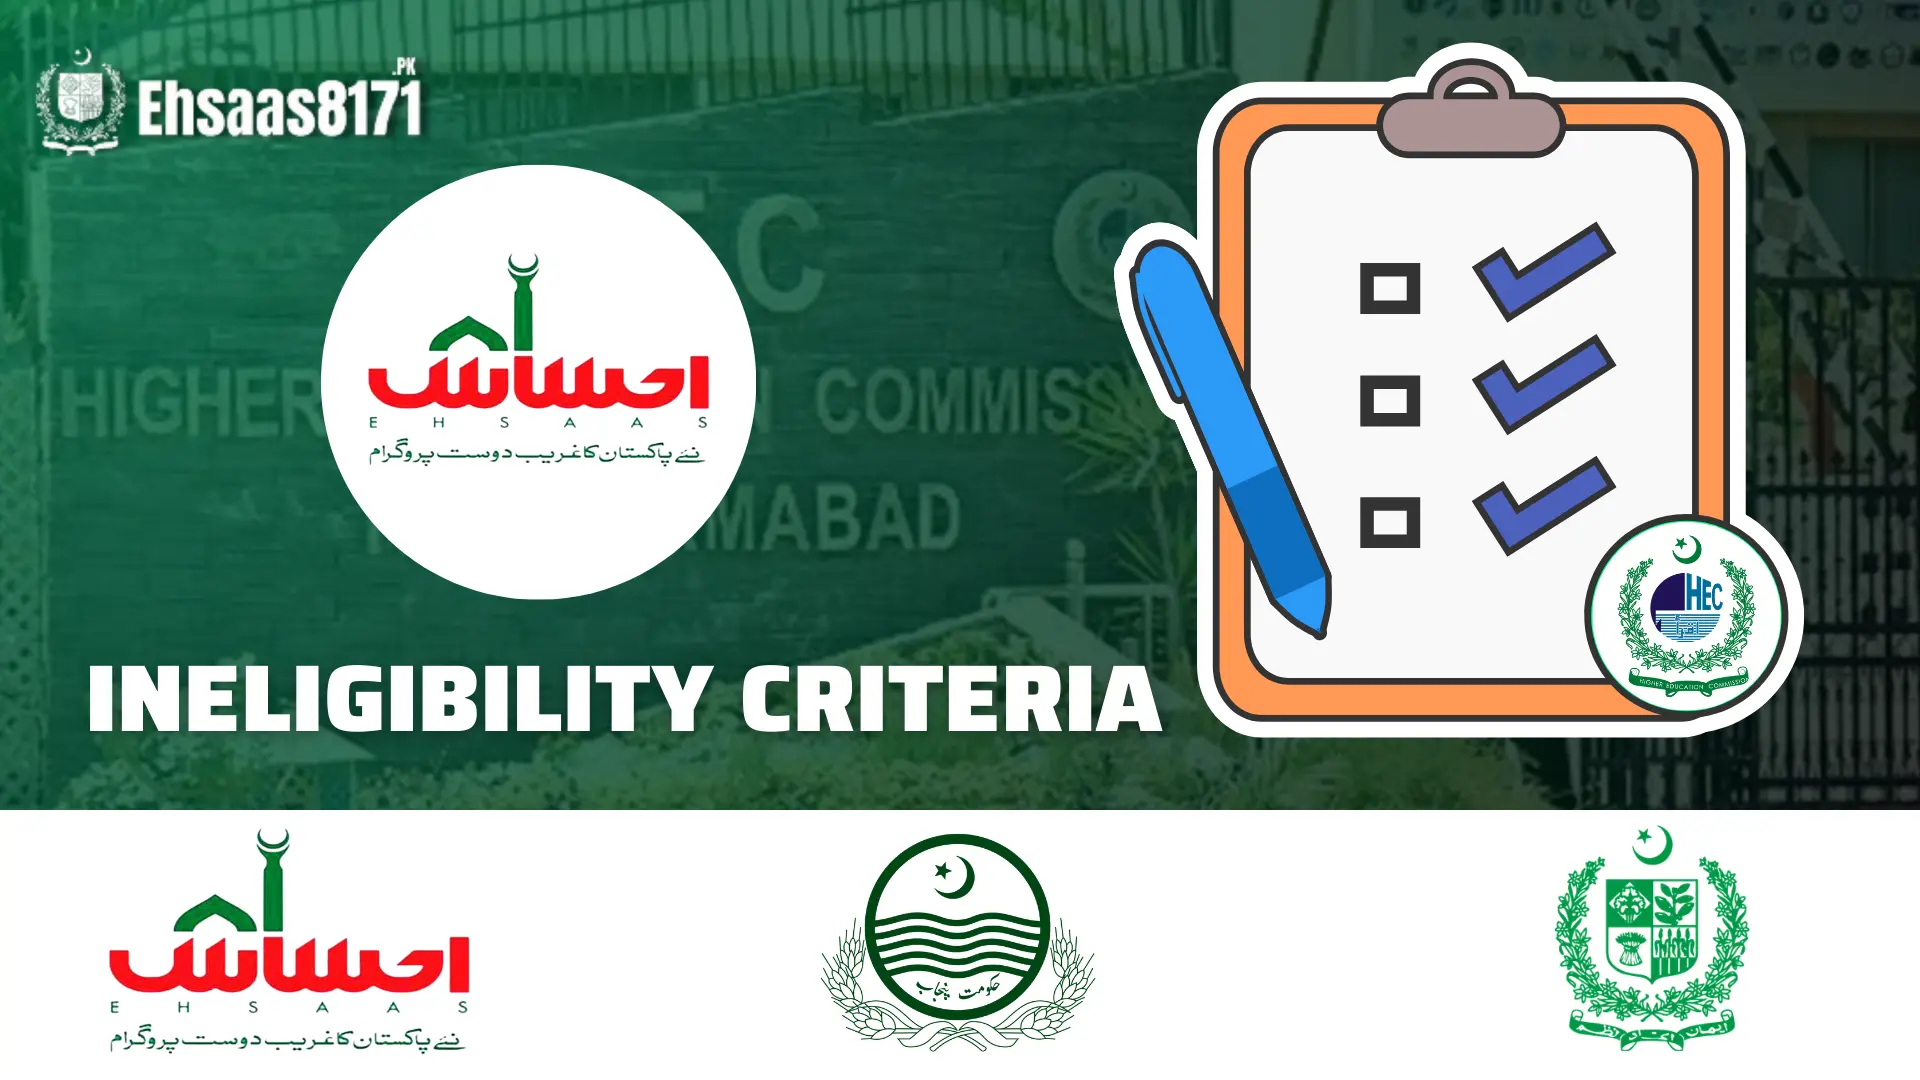 Ineligibility criteria